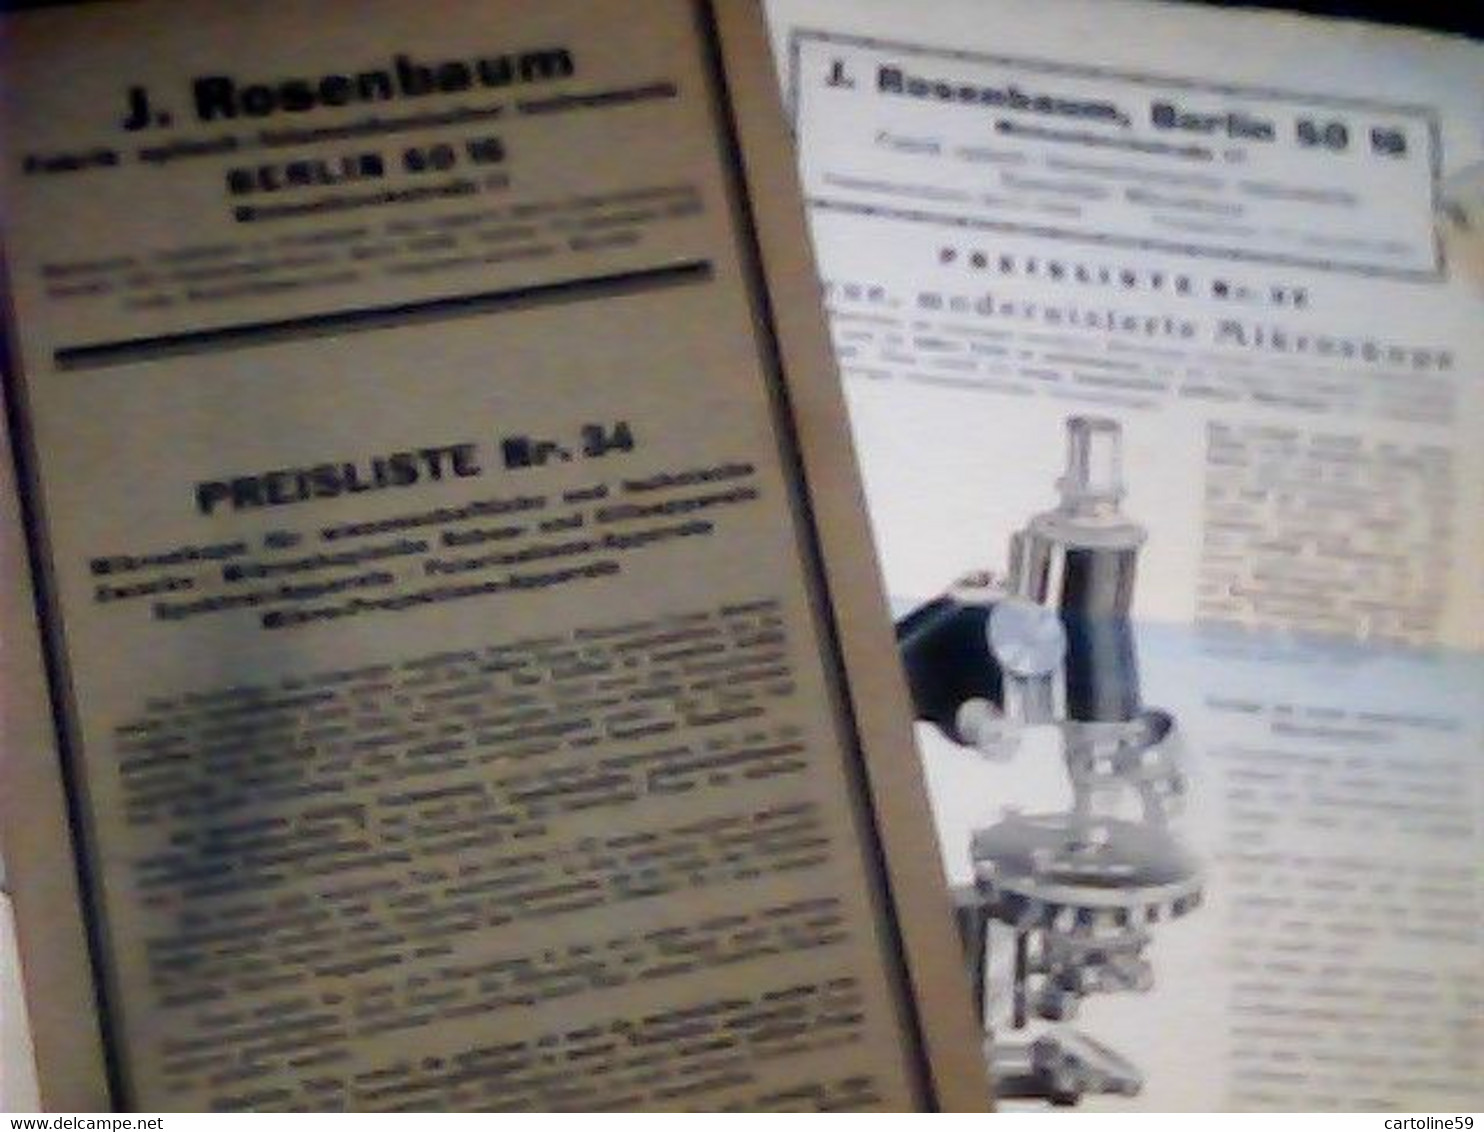 LIBRETTO MICROSCOPIO ROSENBAUM BERLIN FABRIK OPTISCH MIKROSKOP PREISLISTELETTER 1932 IQ8312 - Kataloge